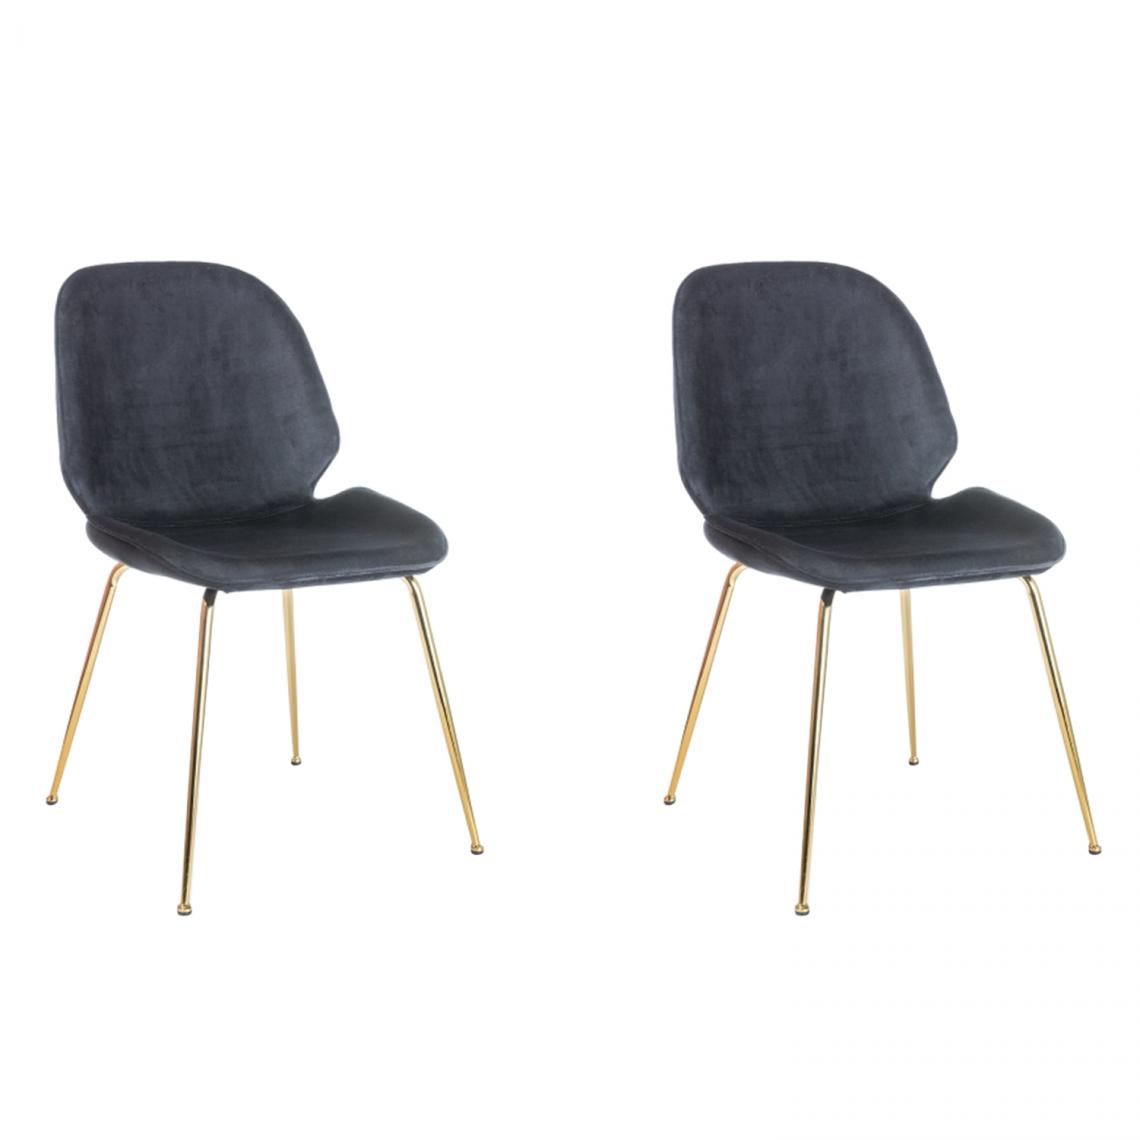 Hucoco - ADRIUN - Lot de 2 chaises style glamour salle à manger - 87x50x42 cm - Tissu velouté - Base en métal - Noir - Chaises